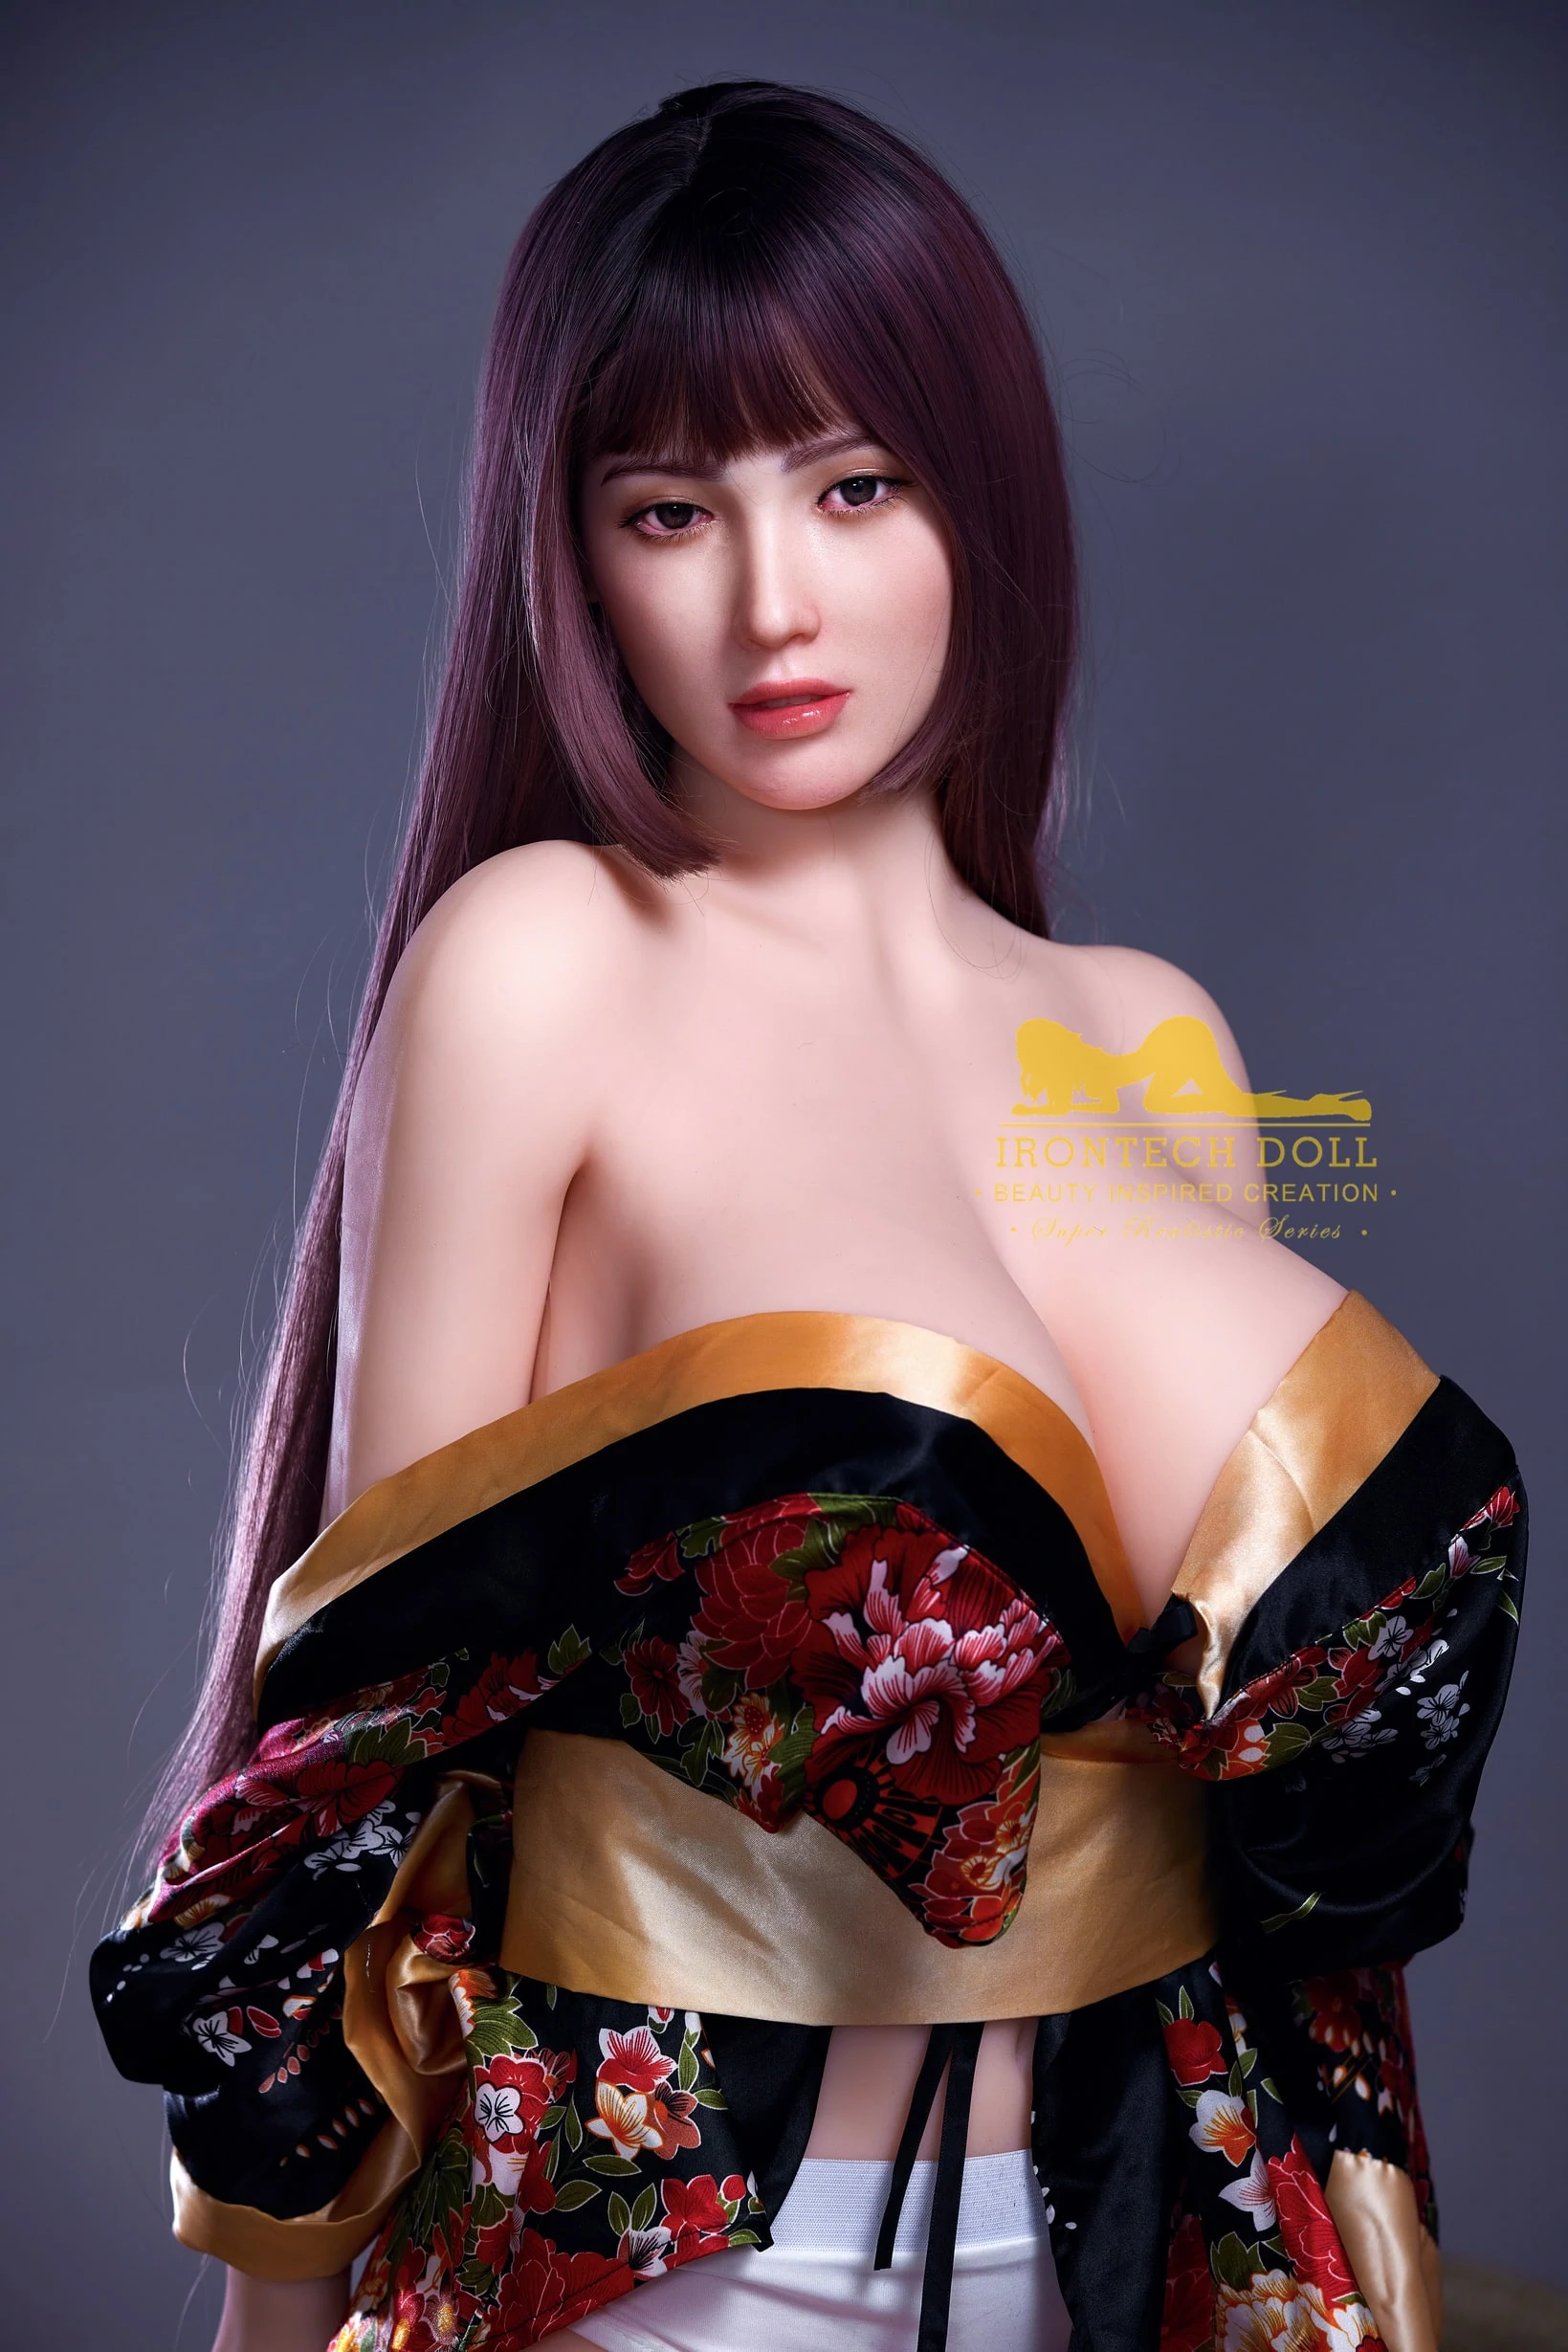 Kimono Japanese Princess Sex Doll 3 - Búp bê tình dục Nhật Bản là gì? Top các sản phẩm bán chạy nhất hiện nay